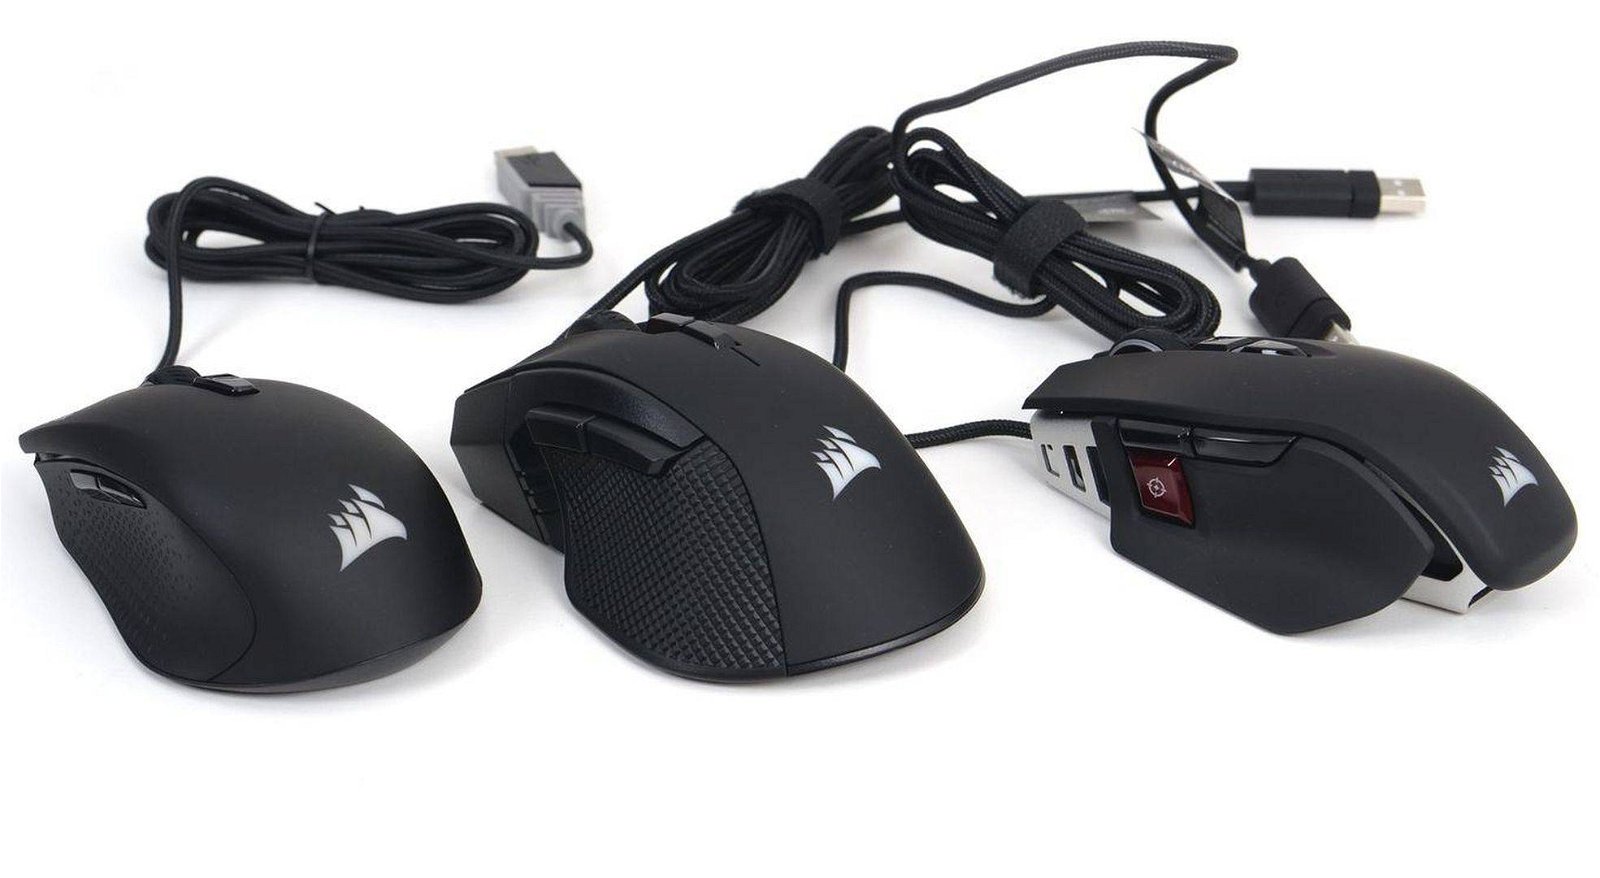 Immagine di Tre nuovi mouse da Corsair, c'è anche l'Harpoon RGB Wireless con tecnologia Slipstream